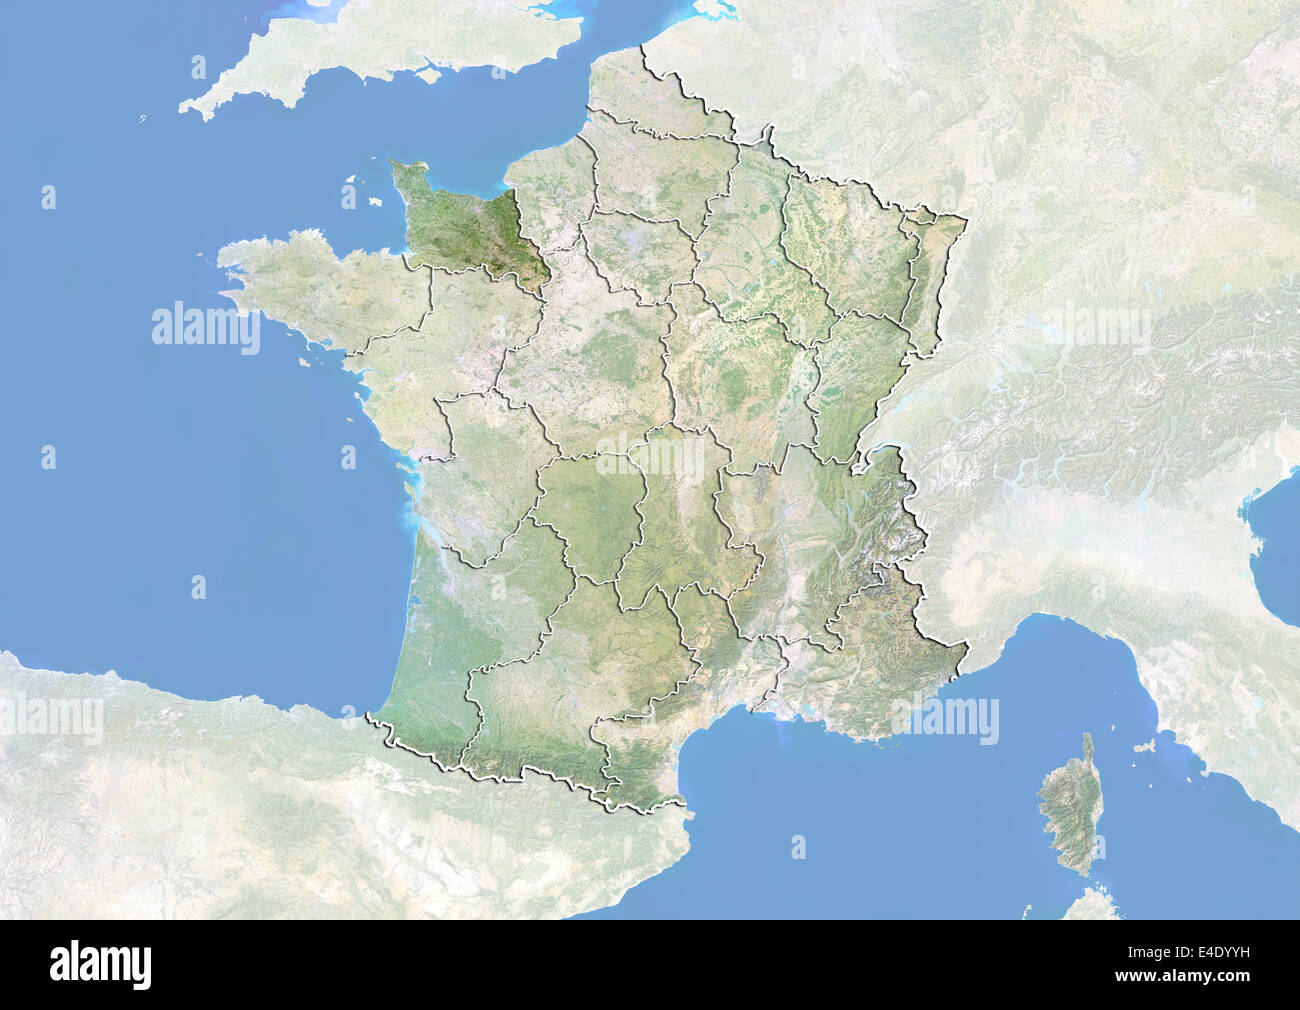 La France et la région de Basse-Normandie, image satellite avec effet de choc Banque D'Images